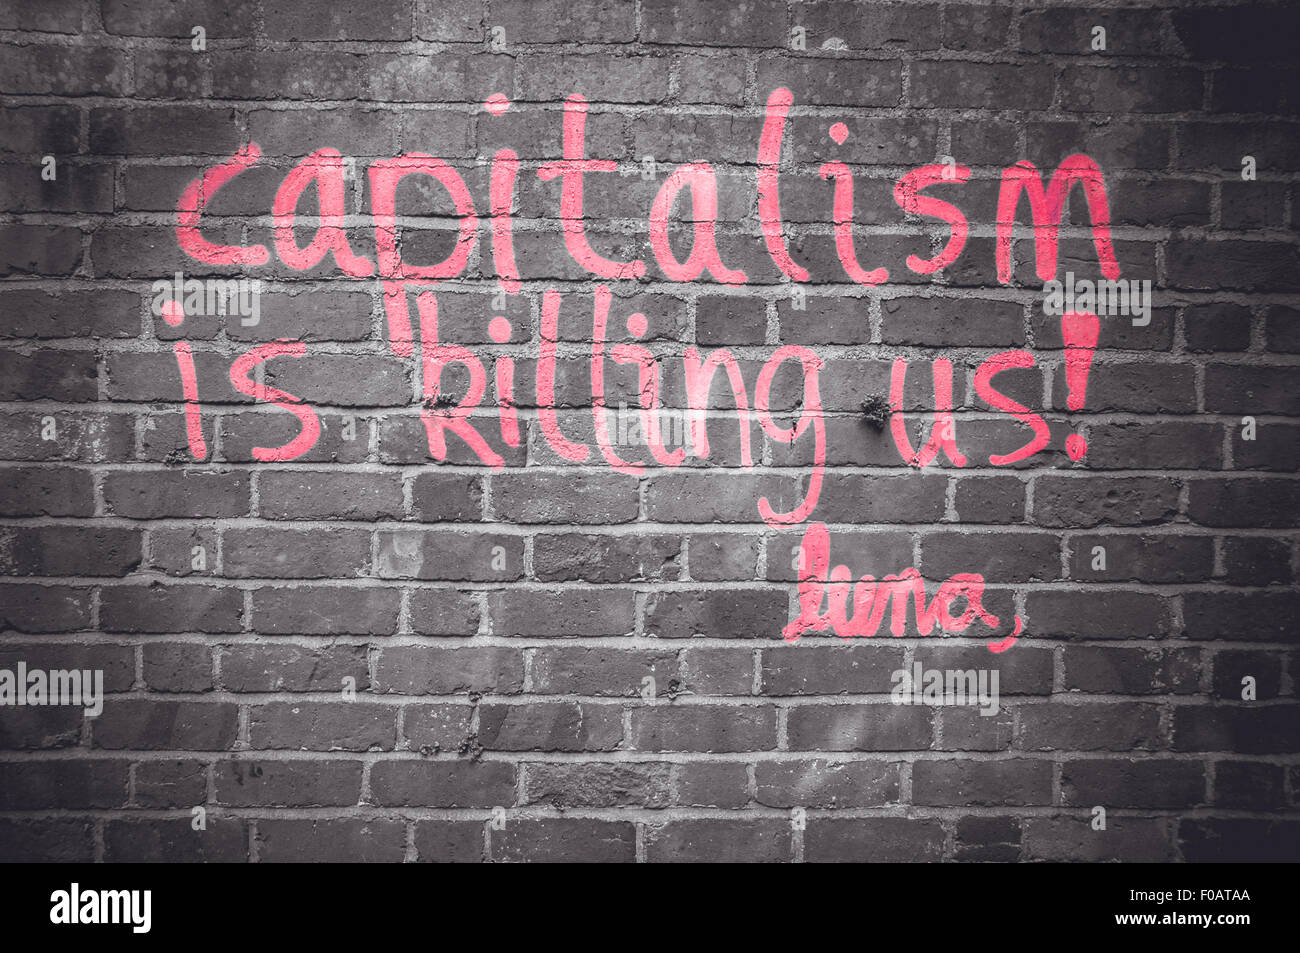 Capitalism is killing us, graffiti by Luna, Oxford, United Kingdom Stock Photo